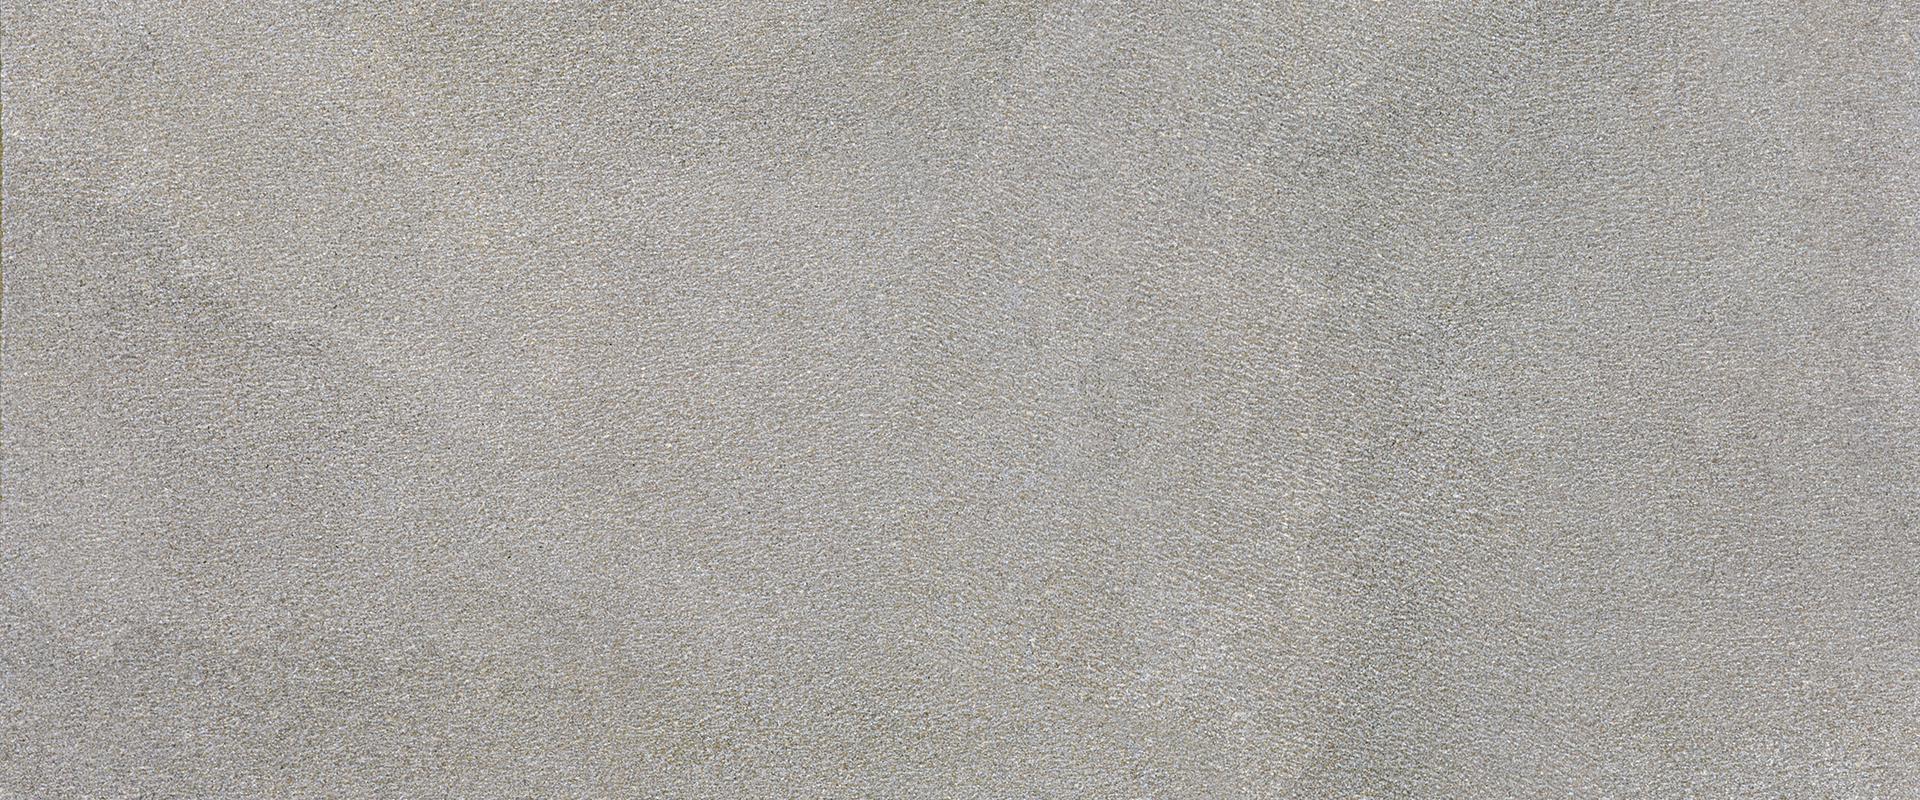 Stone Project: Strutturato Grey Wall Tile (12"x24"x9.5-mm | strutturato)